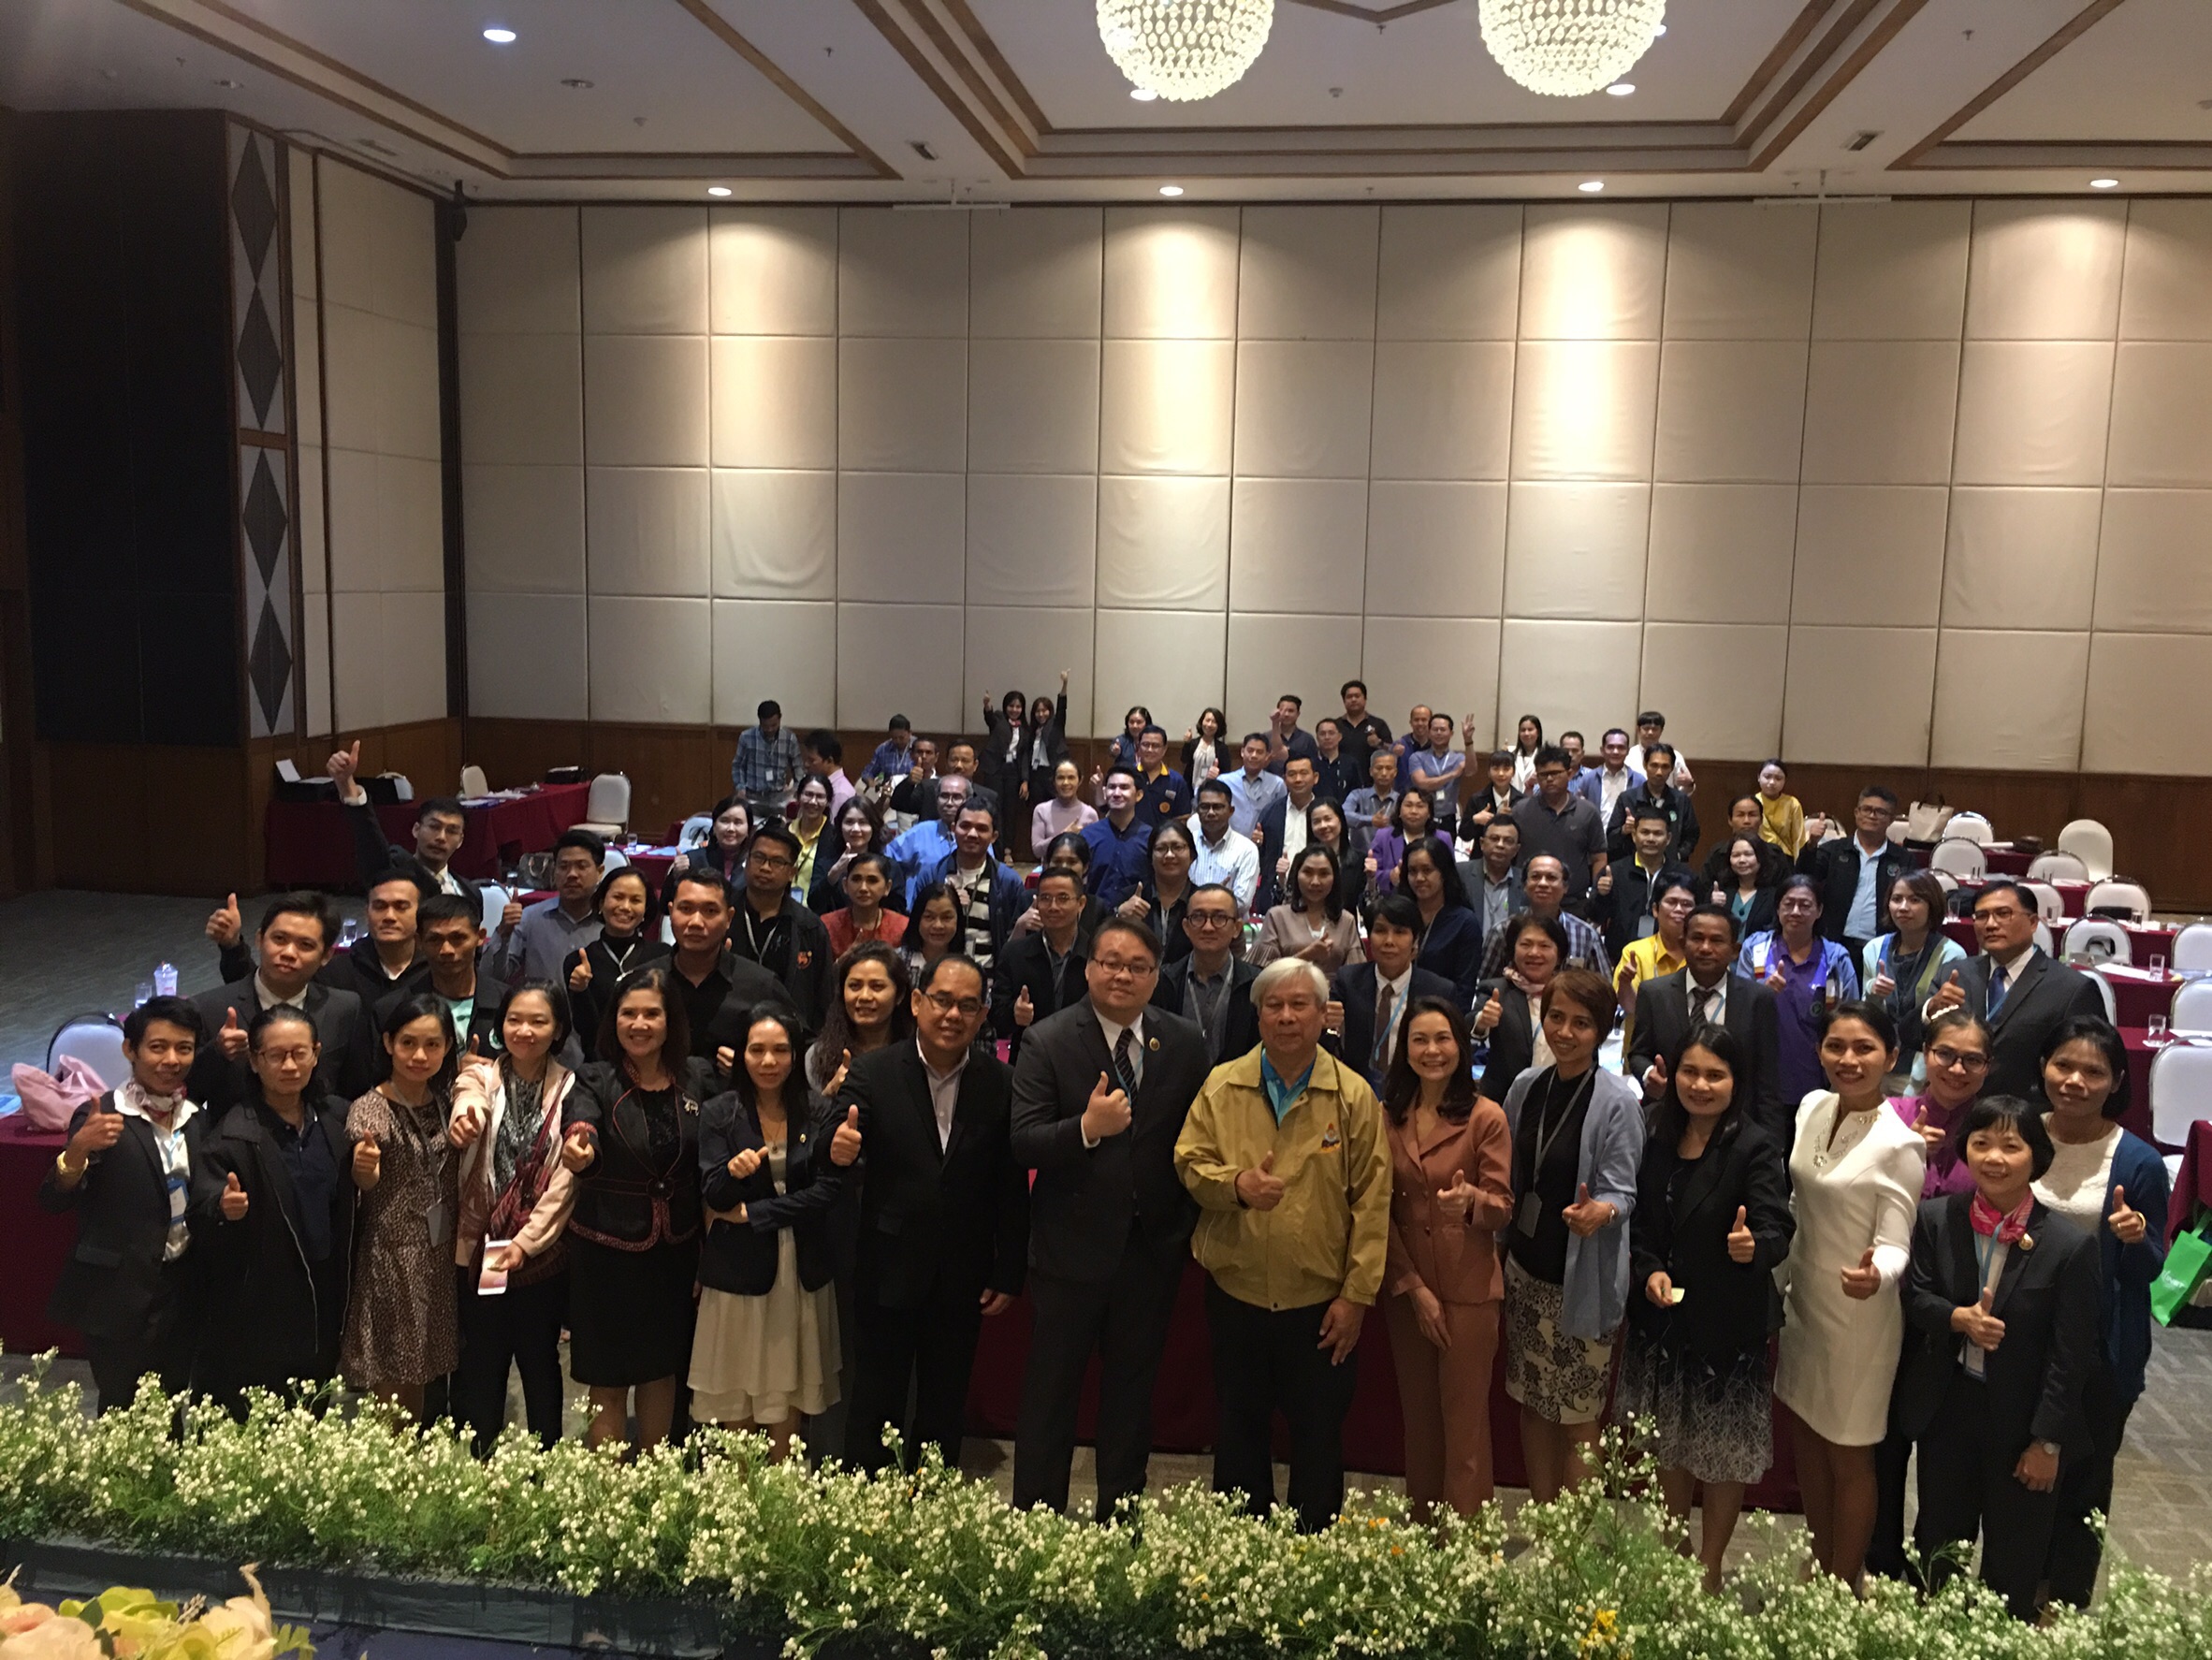 ประชุมวิชาการร่วมกับรังสีการแพทย์แห่งประเทศไทย ครั้งที่17 27-29 พ.ย. - พร้อมเข้าเยี่ยมและให้กำลังใจหน่วยงานรังสีวิทยาในพื้นที่จังหวัดอุบลราชธานีระหว่างวันที่ 25-26 พฤศจิกายน 2562 23